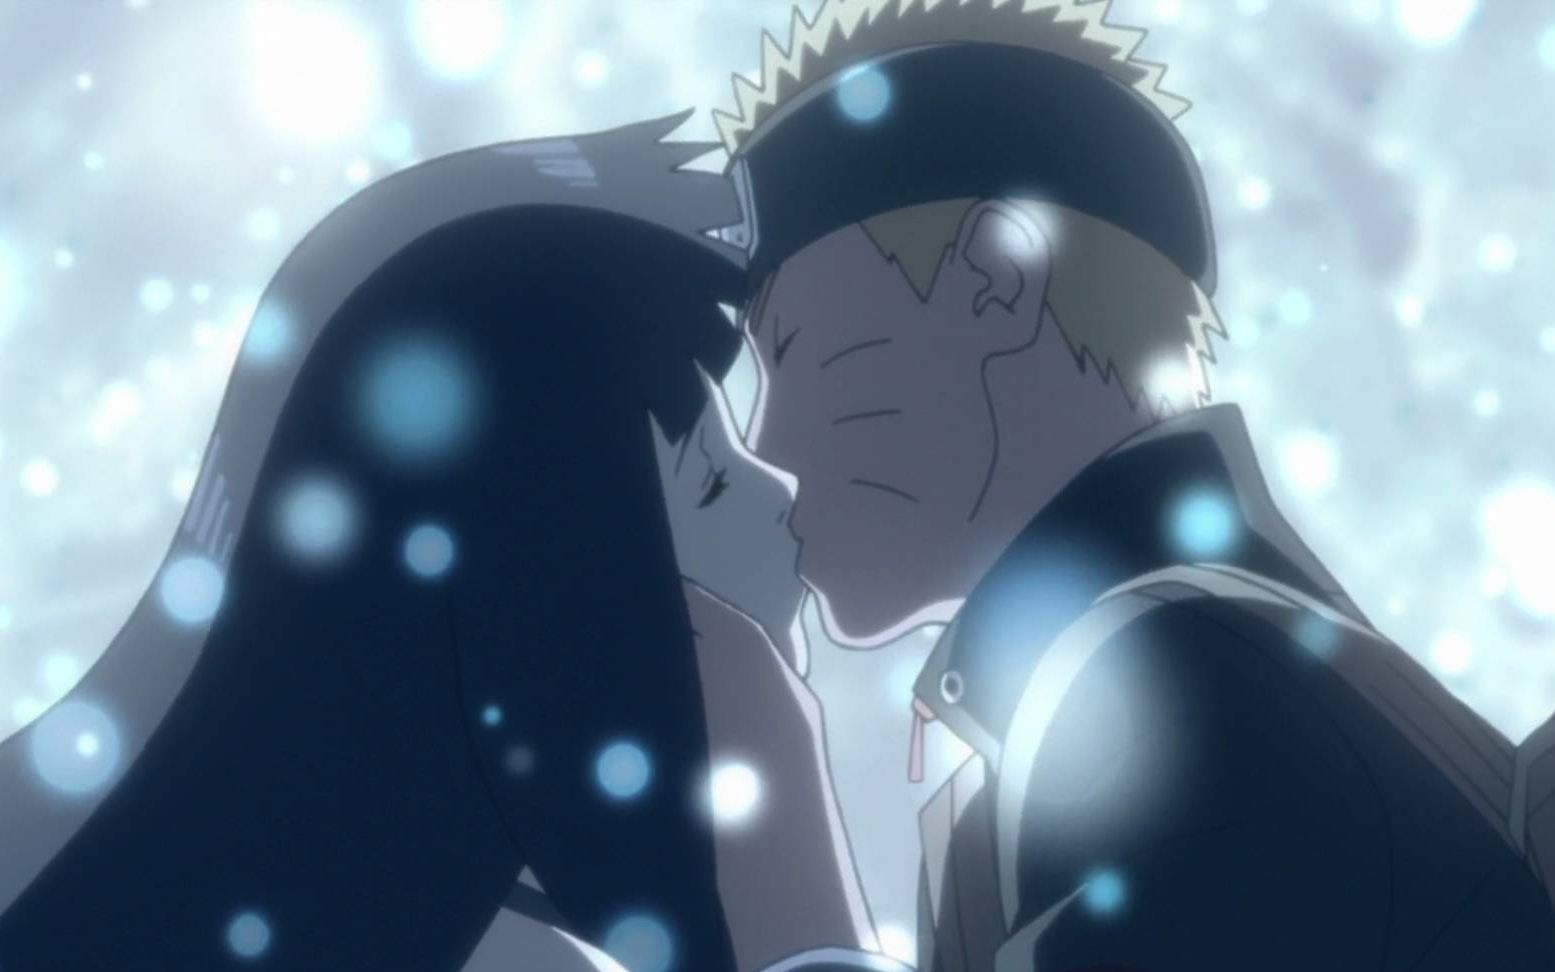 漩涡鸣人与日向雏田:在他们身上我看到了爱情的最美好的样子!